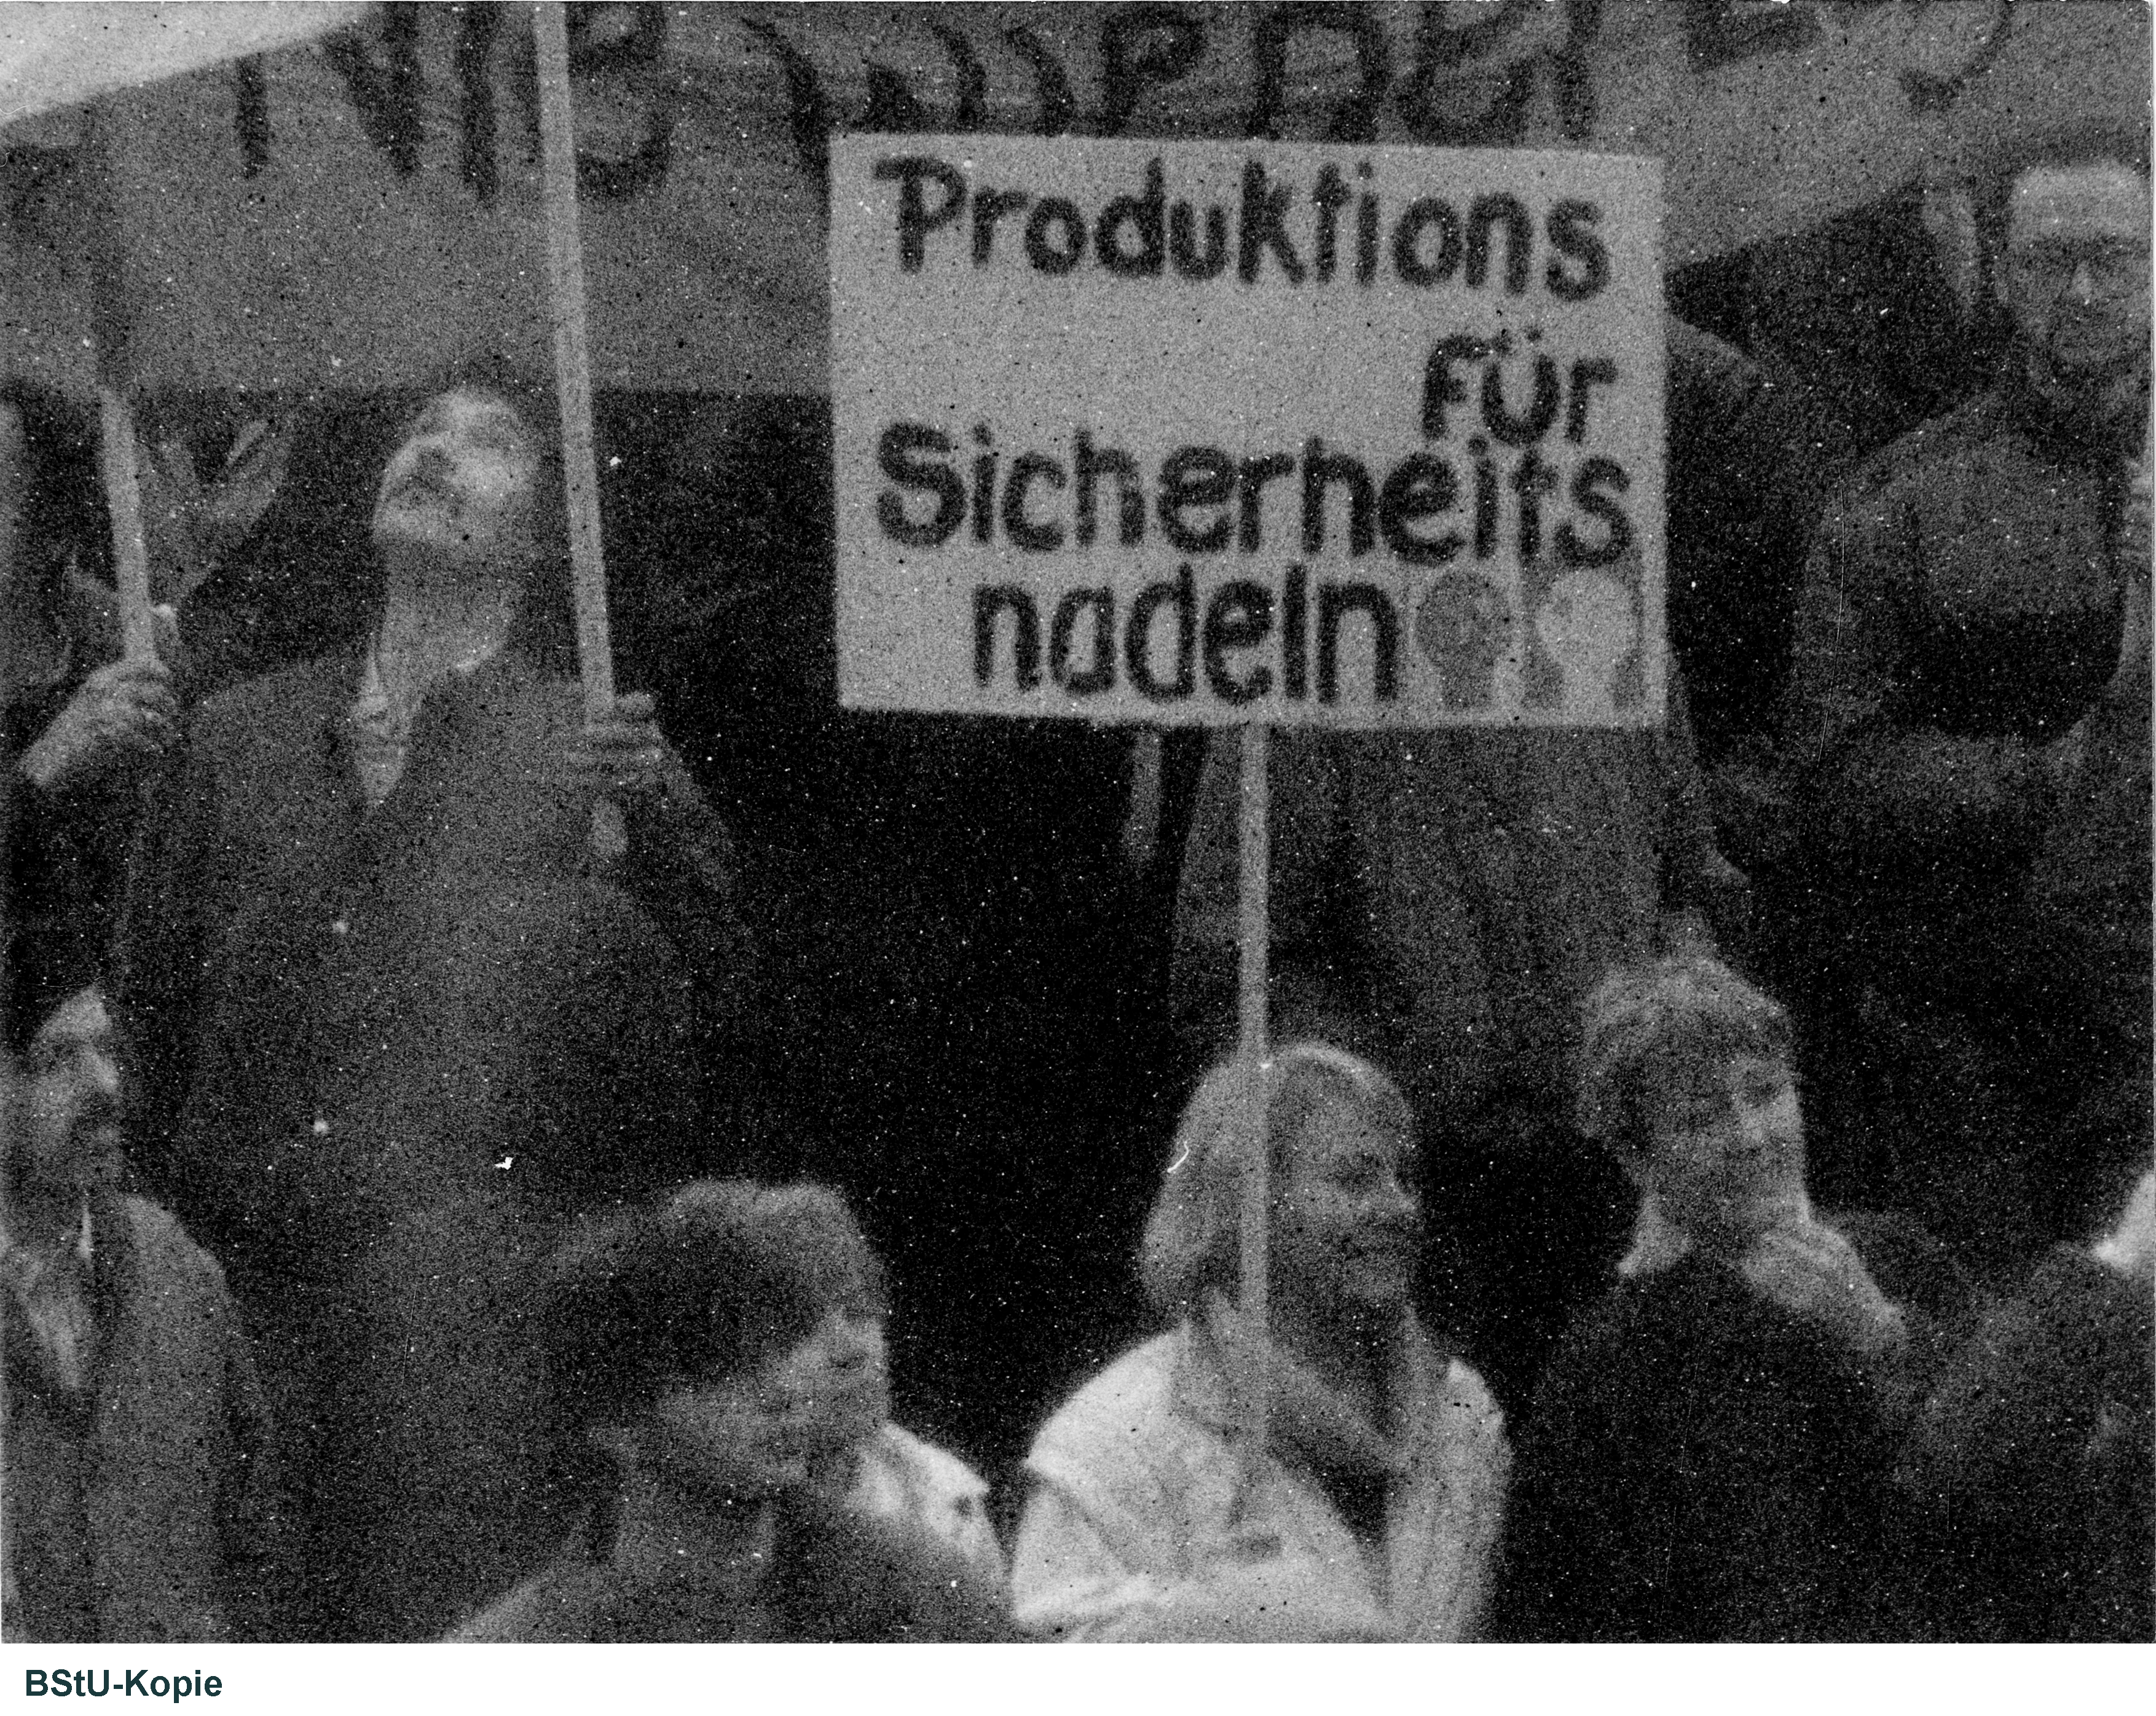 Das Bild zeigt einen Blick ganz nah in die Menschenmenge. Eine Frau hält ein Plakat mit der Aufschrift "Produktions für Sicherheitsnadeln".